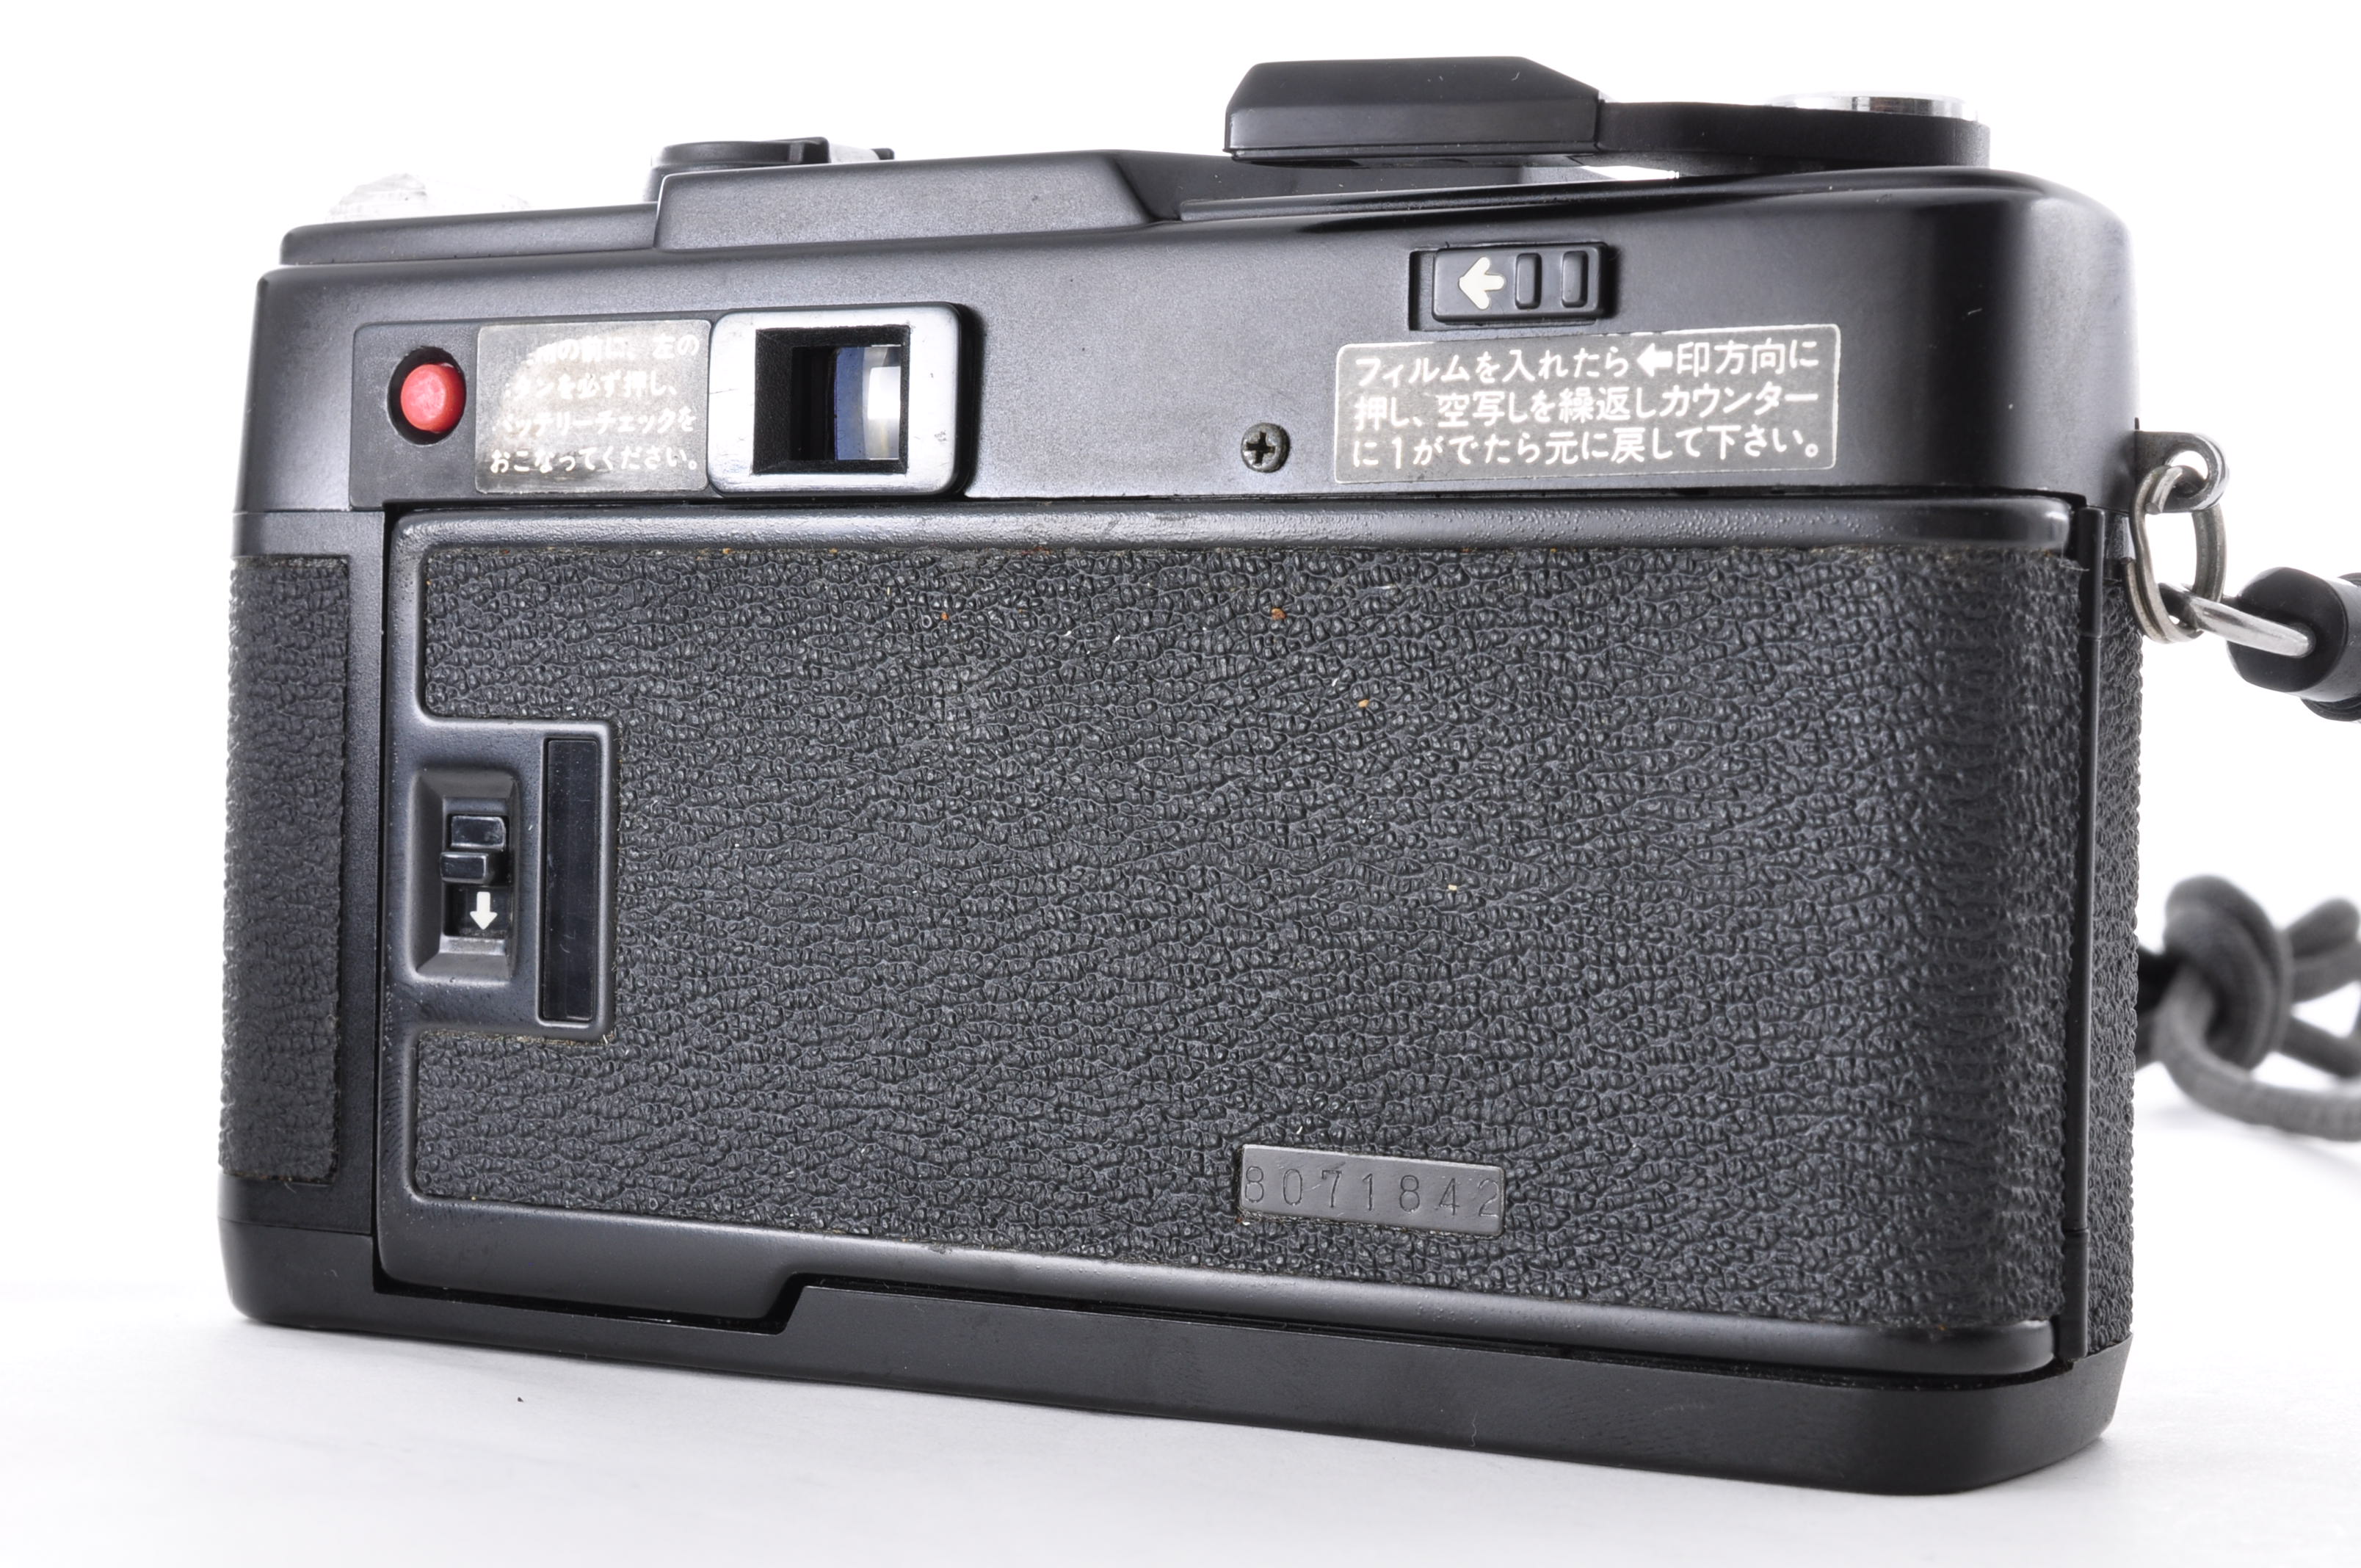 Fuji Fujifilm Flash Fujica Date Rangefinder 35mm Film Camera [Near MINT] JAPAN img06